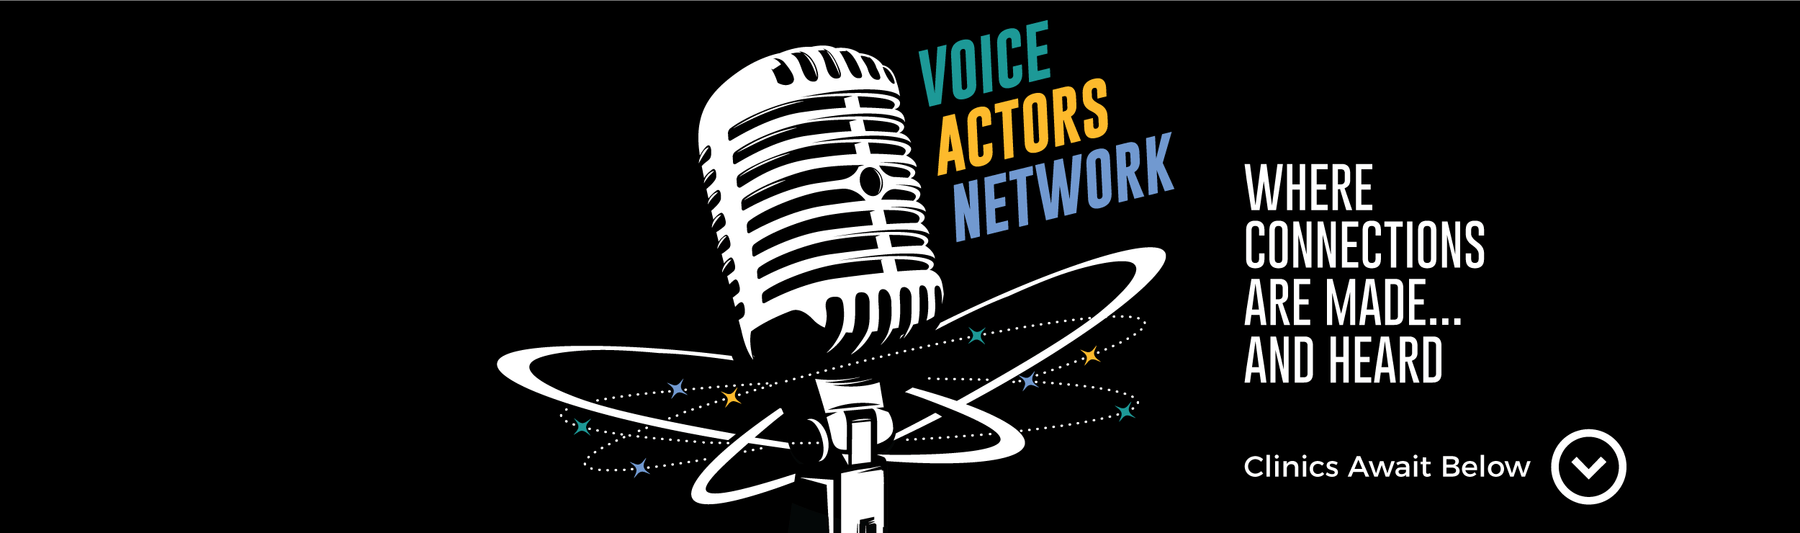 Voice Actors Network